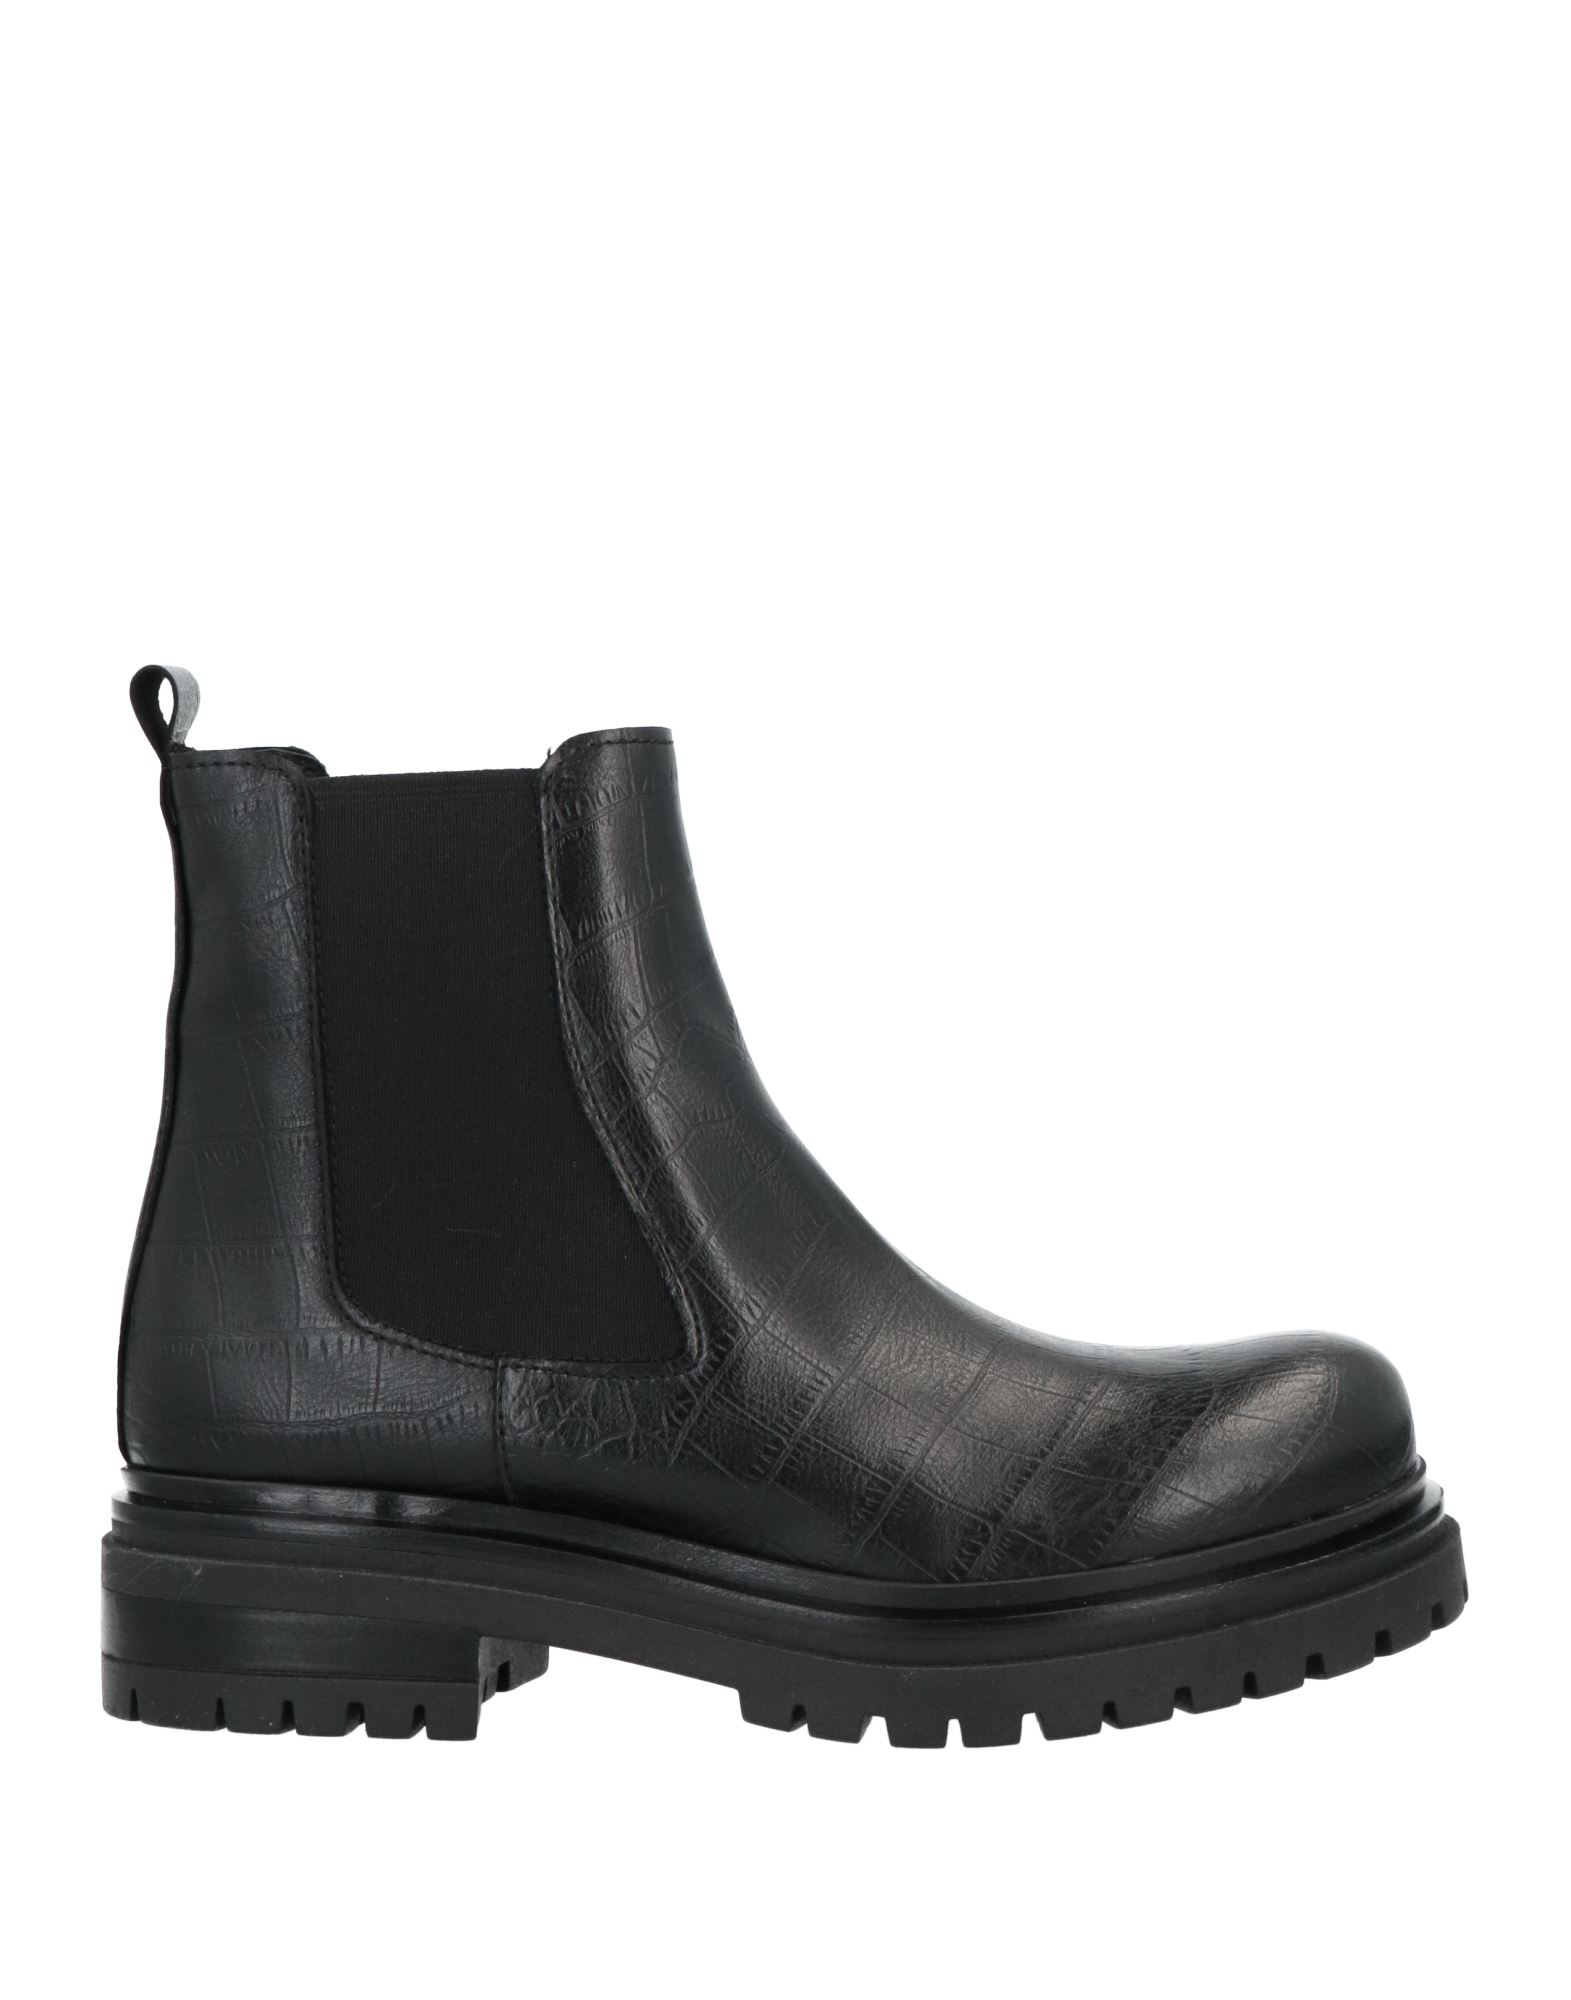 Shop Unlace Woman Ankle Boots Black Size 6 Textile Fibers